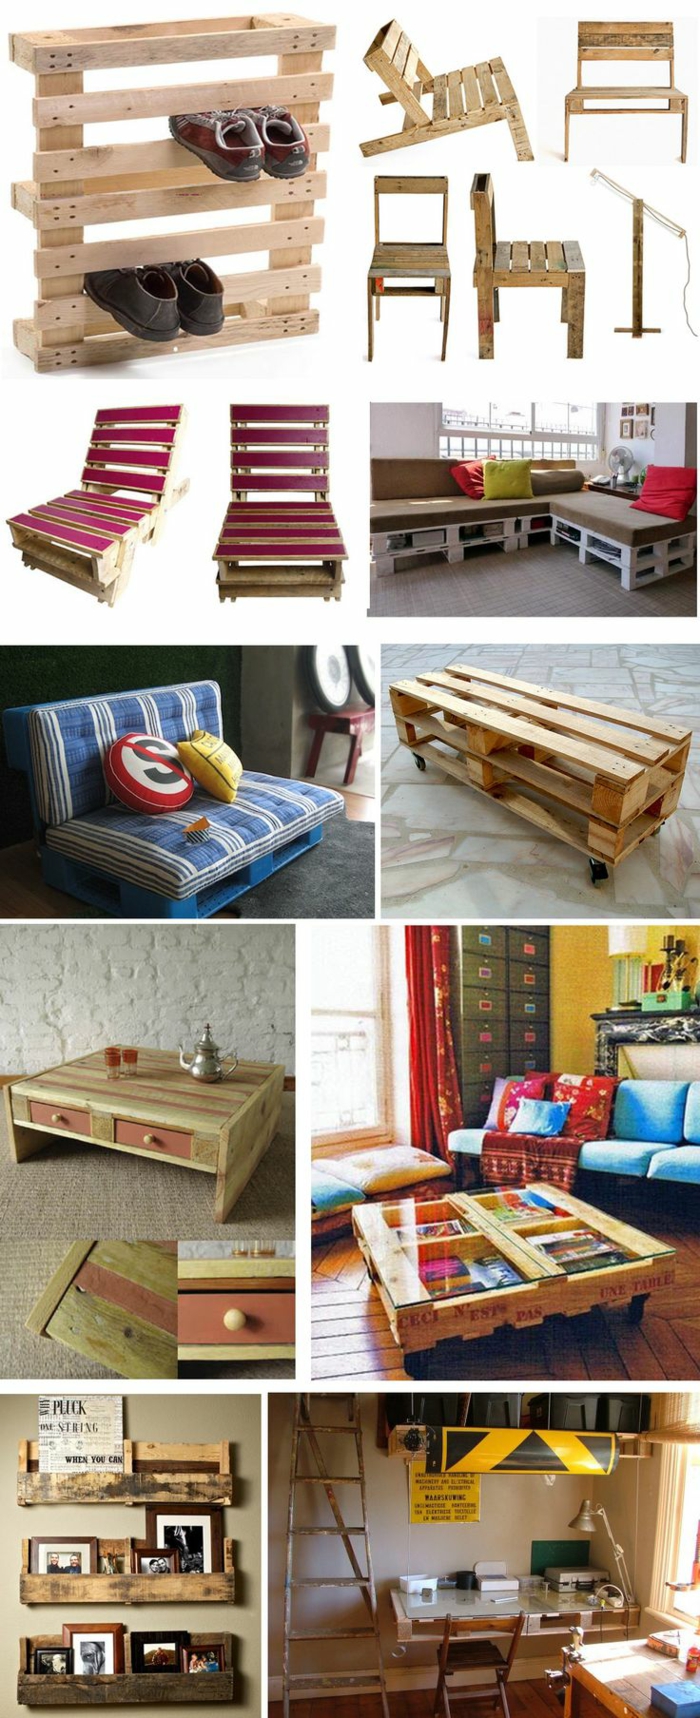 europalette træ palle møbler diy ideer sofabord sofa væg hylder